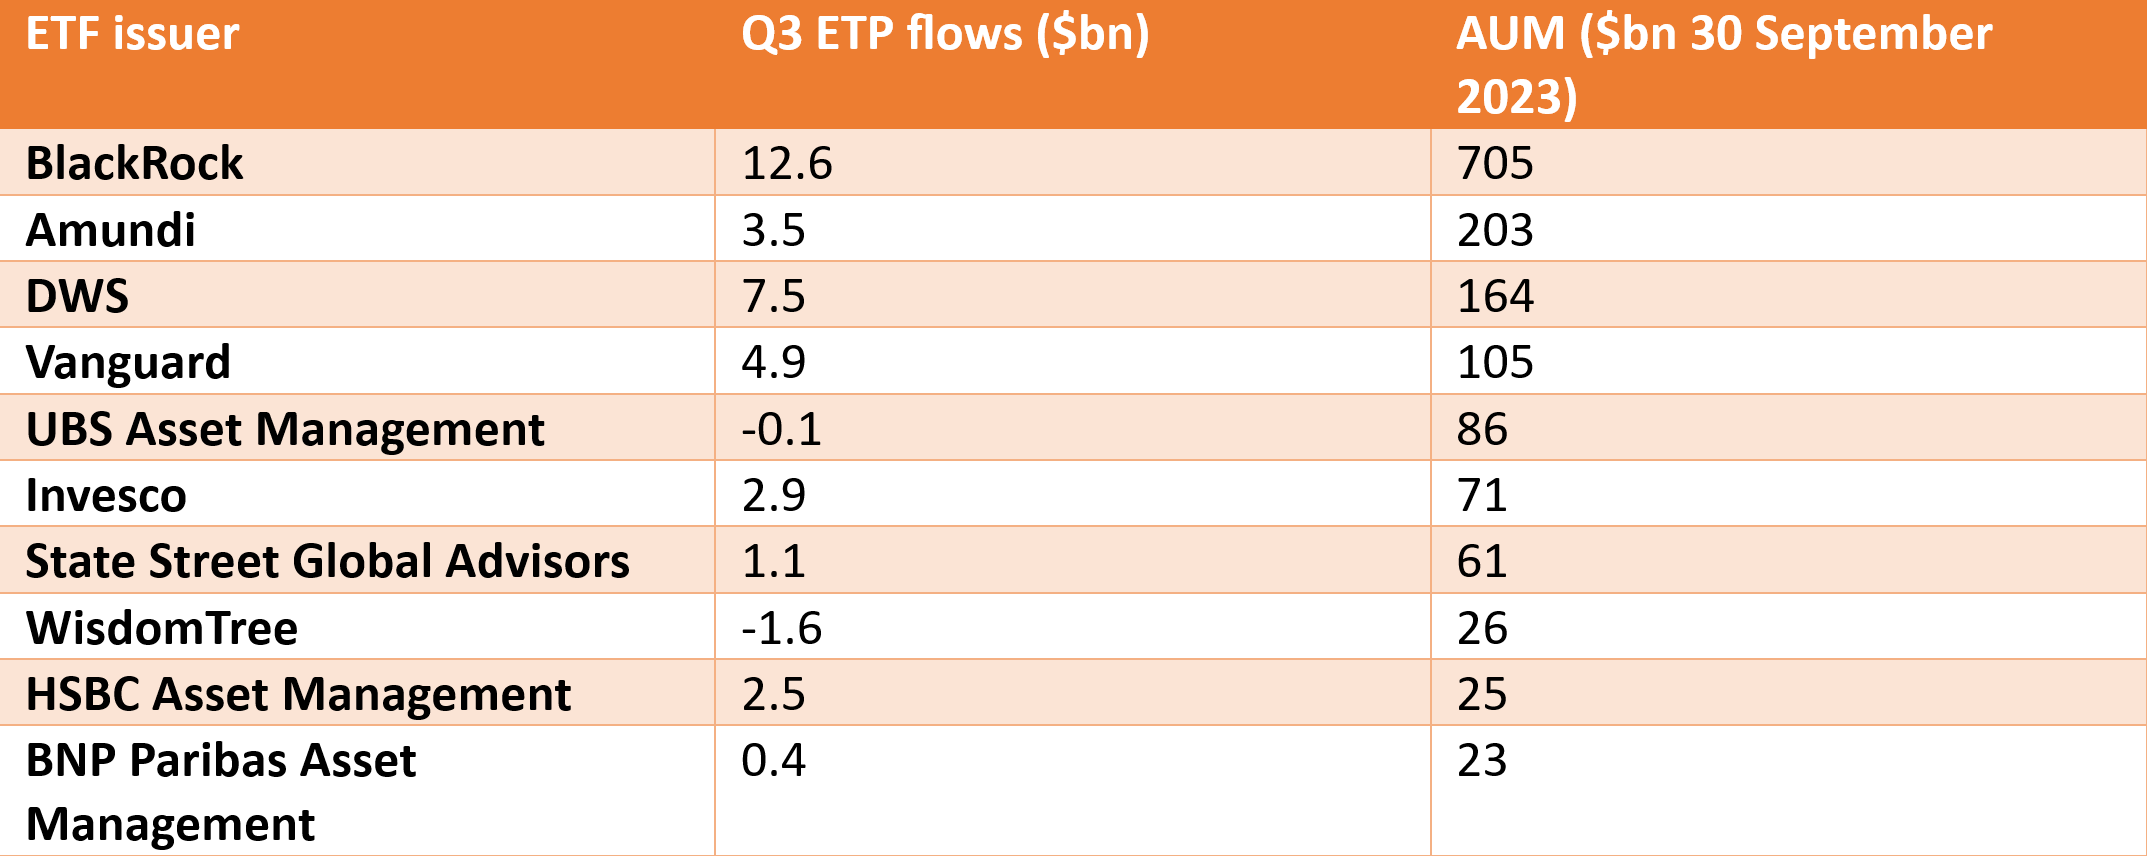 Q3 ETF issuer flows